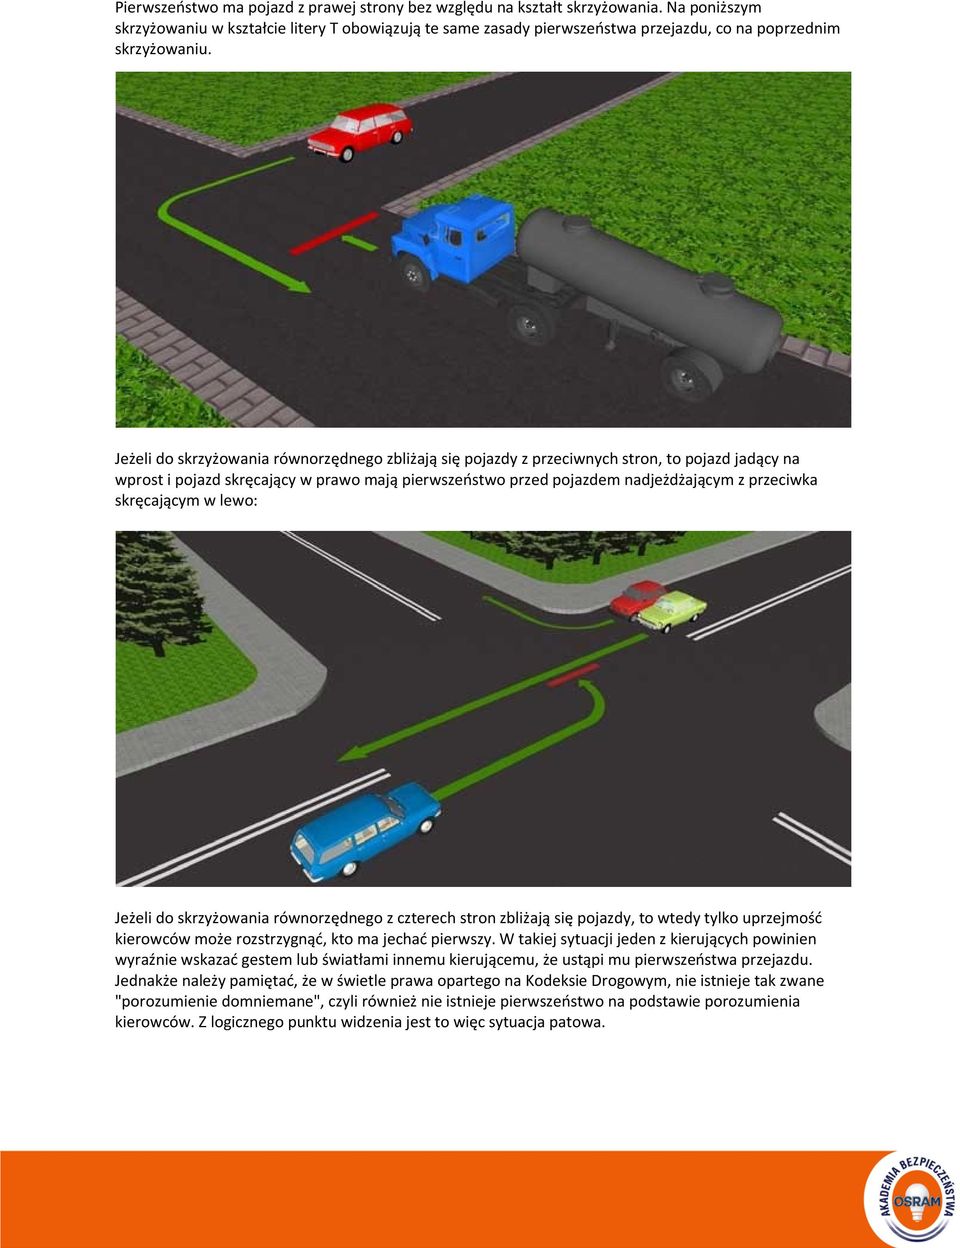 Jeżeli do skrzyżowania równorzędnego zbliżają się pojazdy z przeciwnych stron, to pojazd jadący na wprost i pojazd skręcający w prawo mają pierwszeństwo przed pojazdem nadjeżdżającym z przeciwka